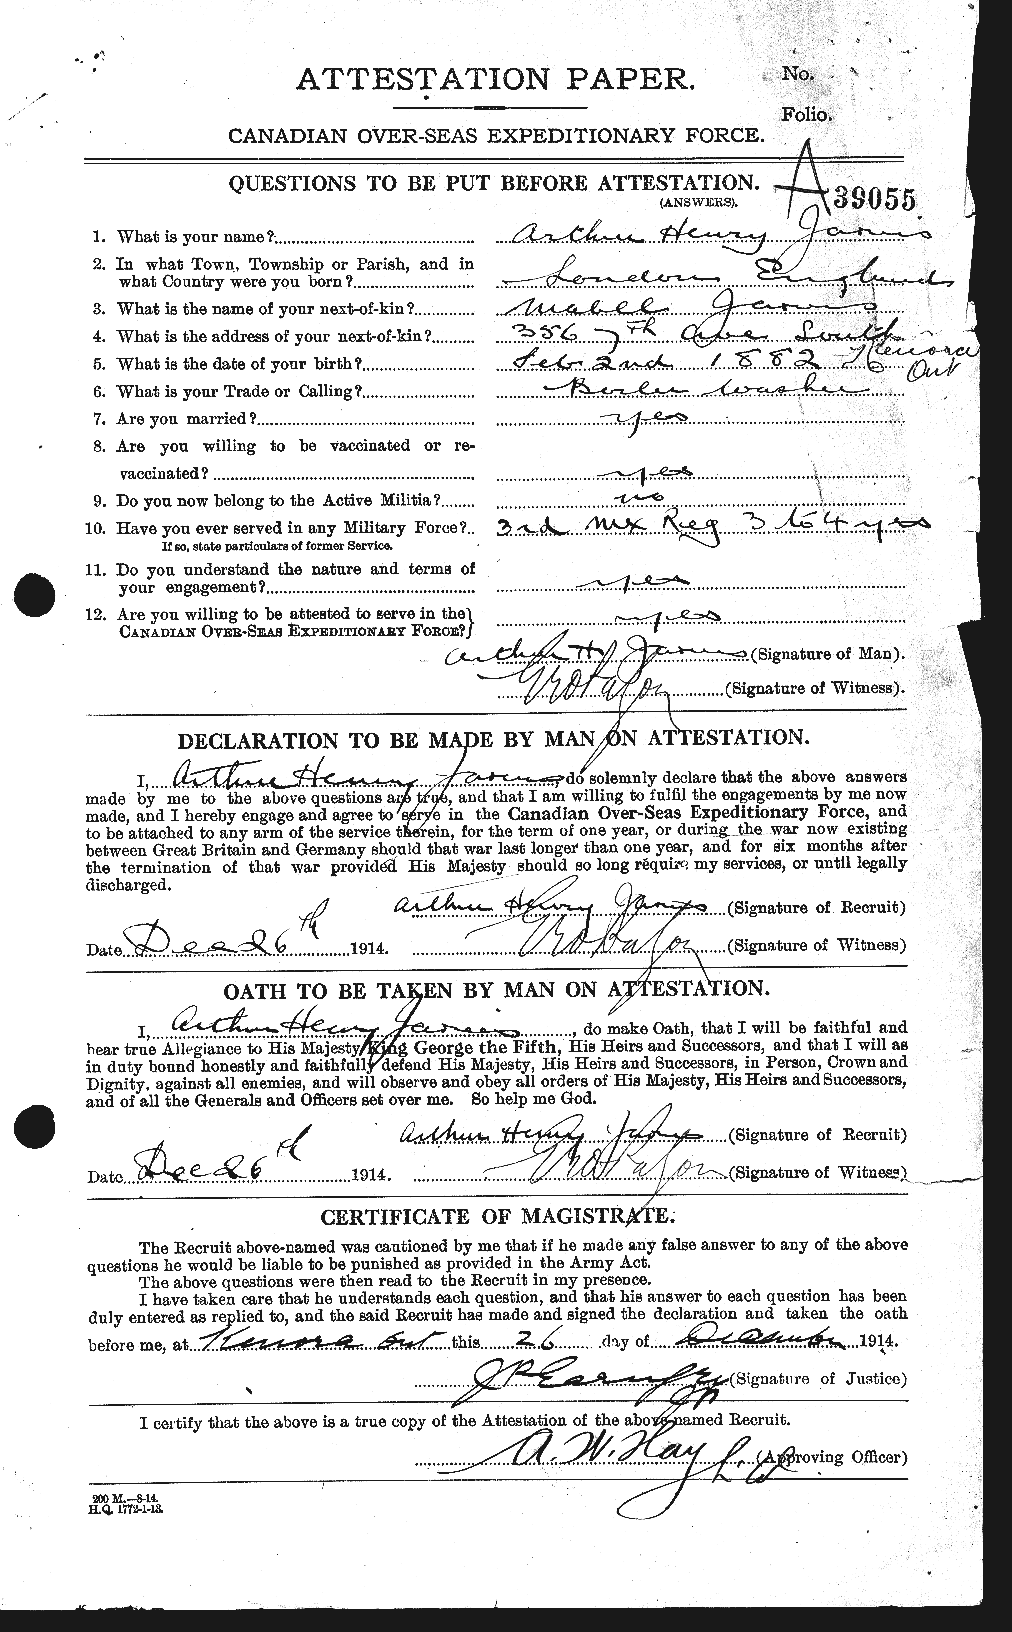 Dossiers du Personnel de la Première Guerre mondiale - CEC 414642a